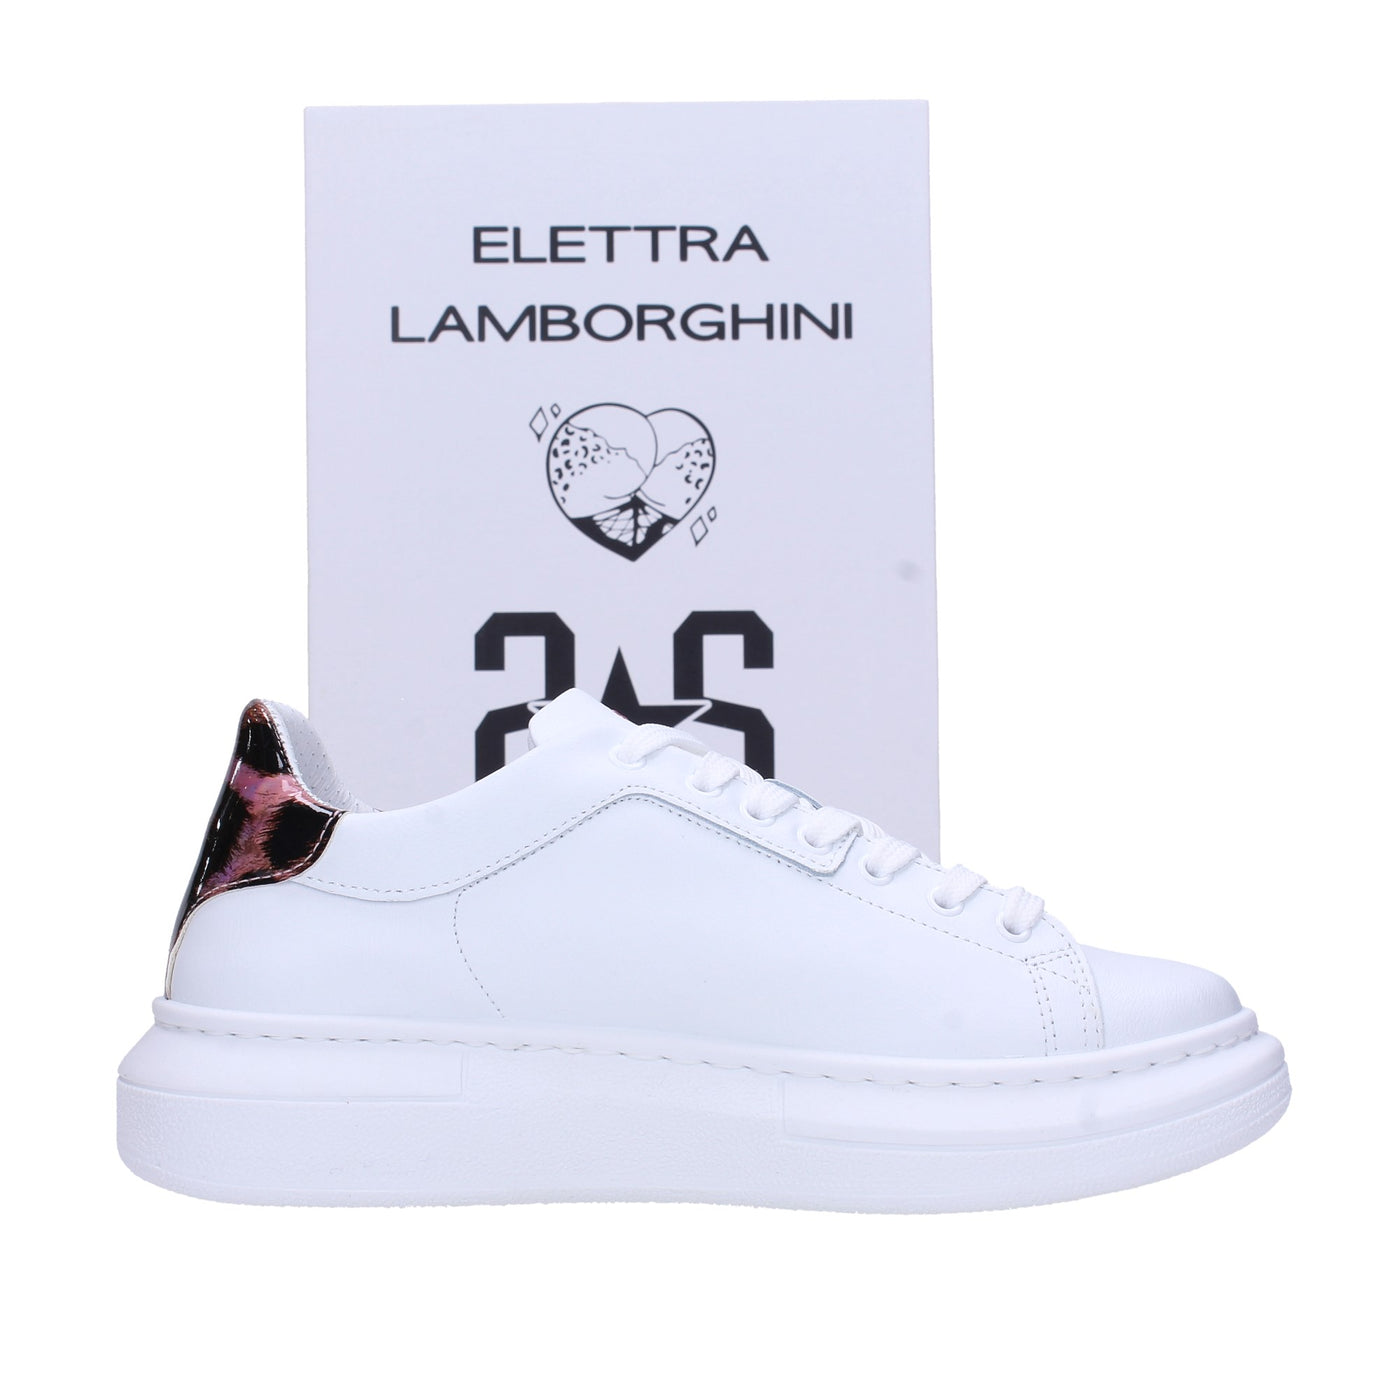 2 star by elettra lamborghini Sneakers#colore_bianca-rosa